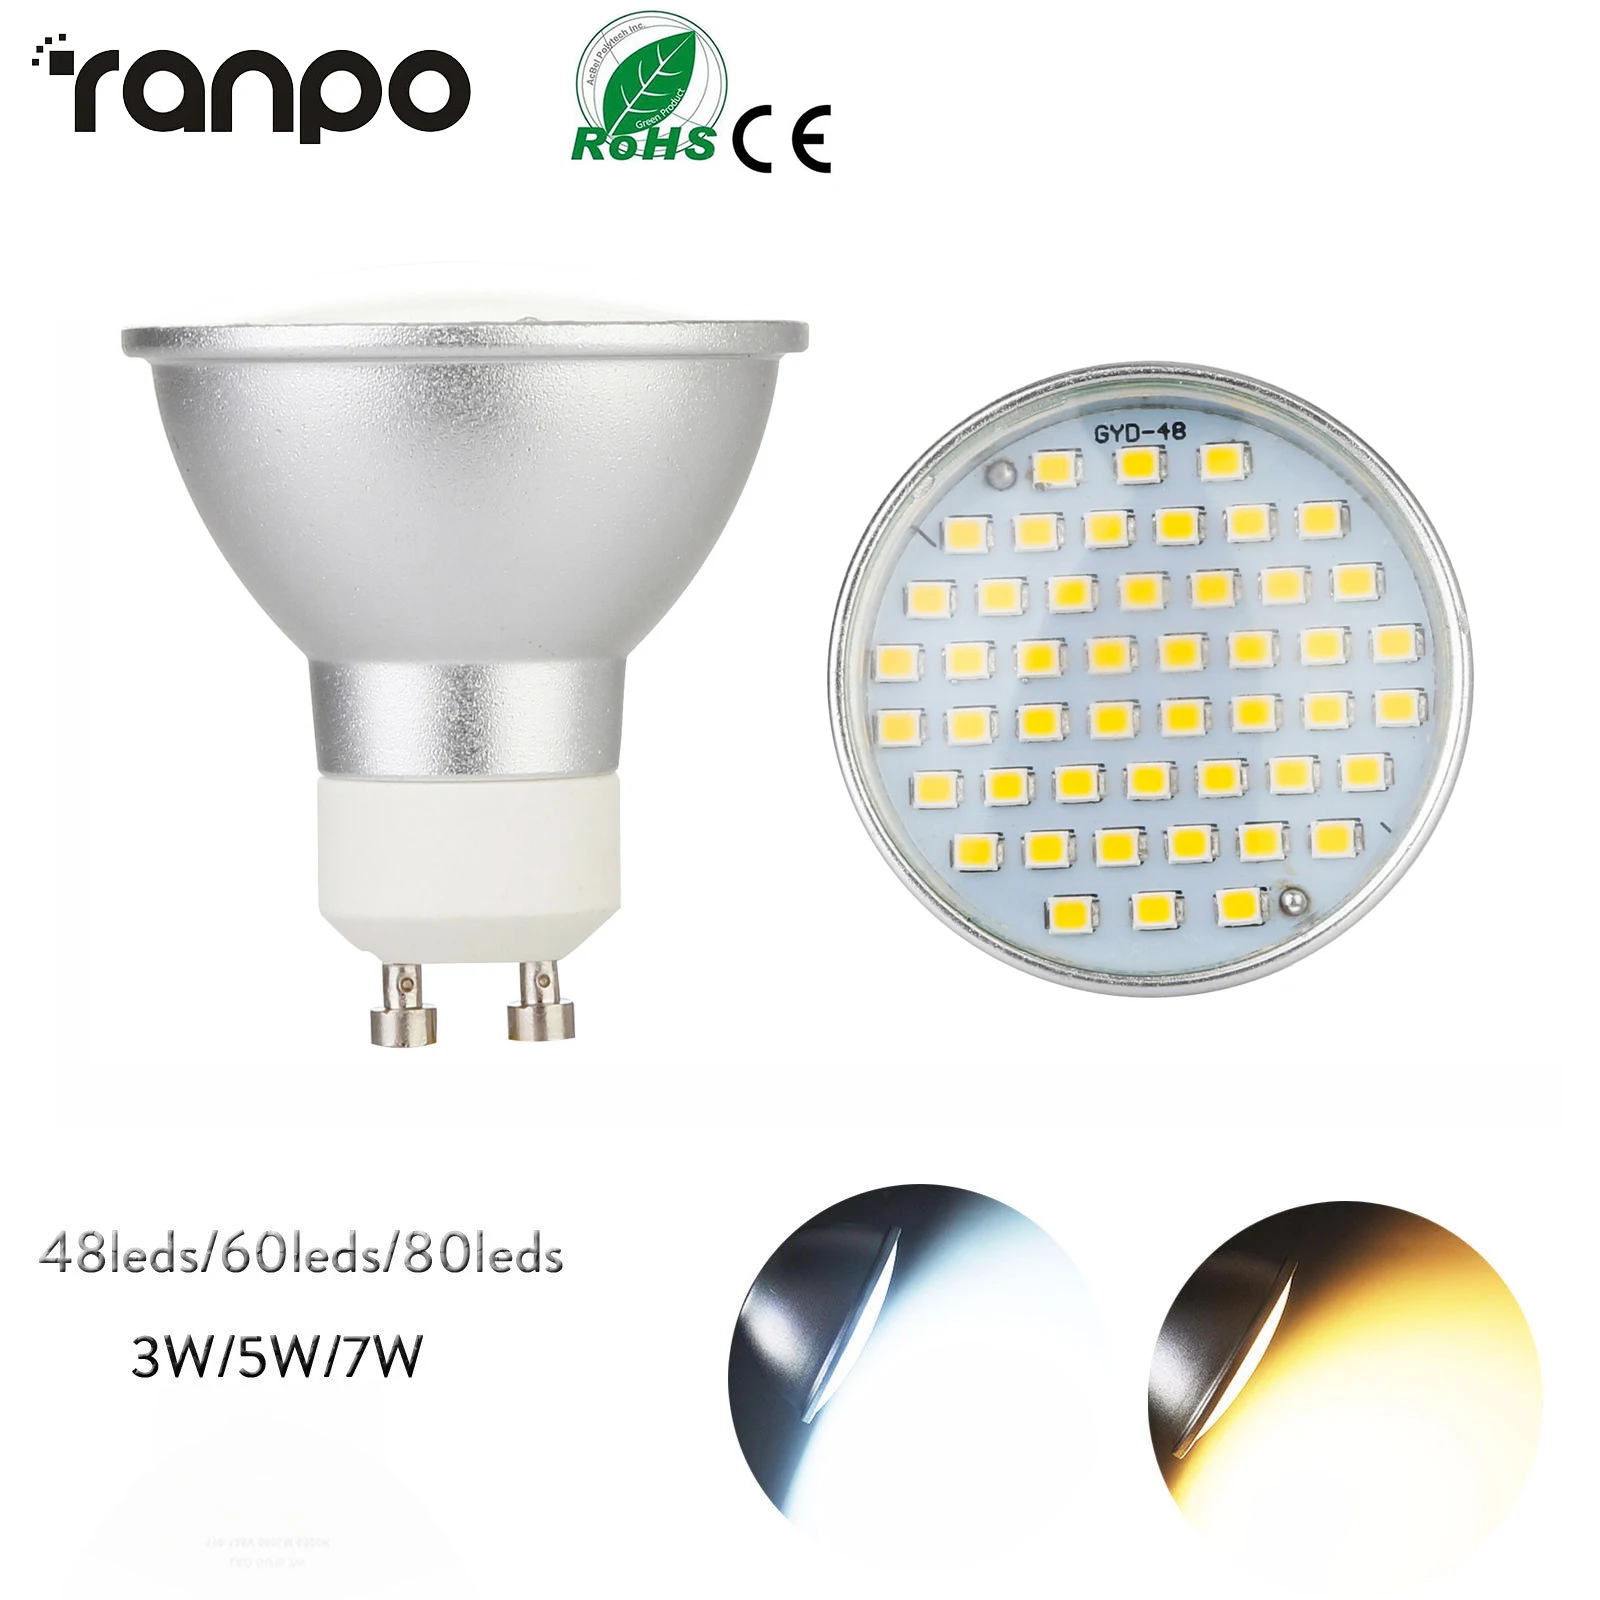 10X GU10 LED Spotlight Bulbs 3W 5W 7W Replace Halogen 15W 25W 35W Lamp AC 220V 2835 SMD Cool Warm White Spot Light 48/60/80 LEDs